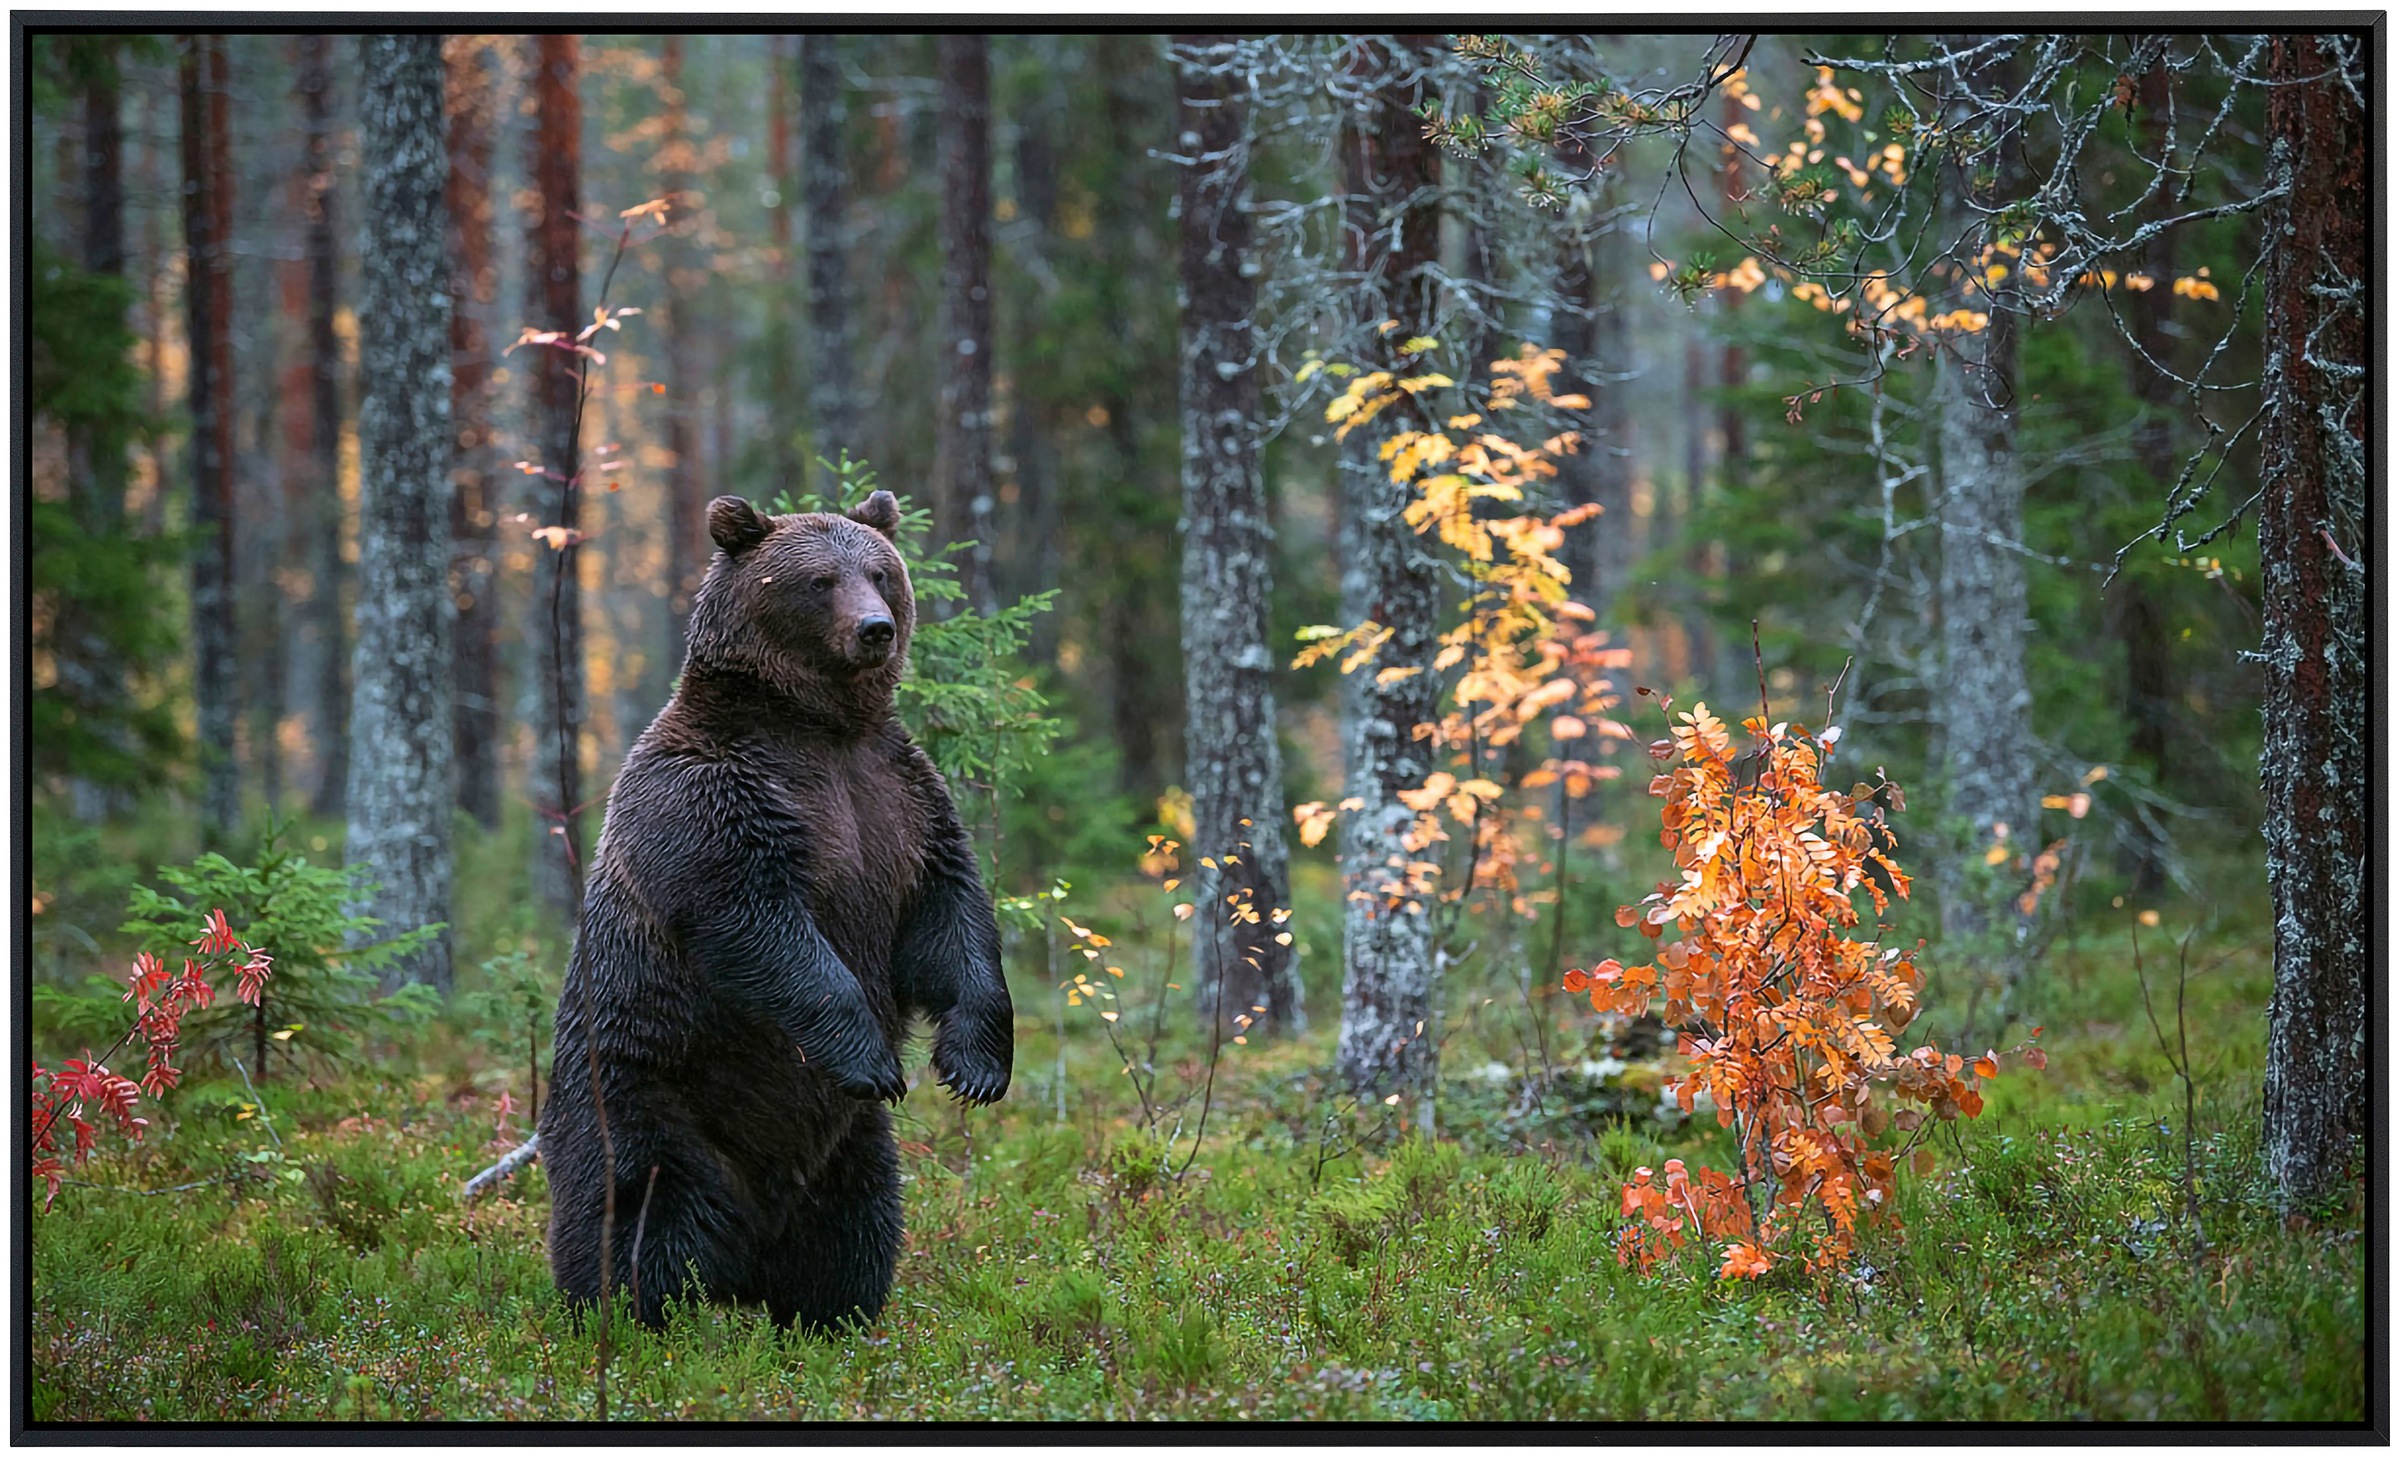 Papermoon Infrarotheizung »Braunbär im Herbstwald«, sehr angenehme Strahlun günstig online kaufen